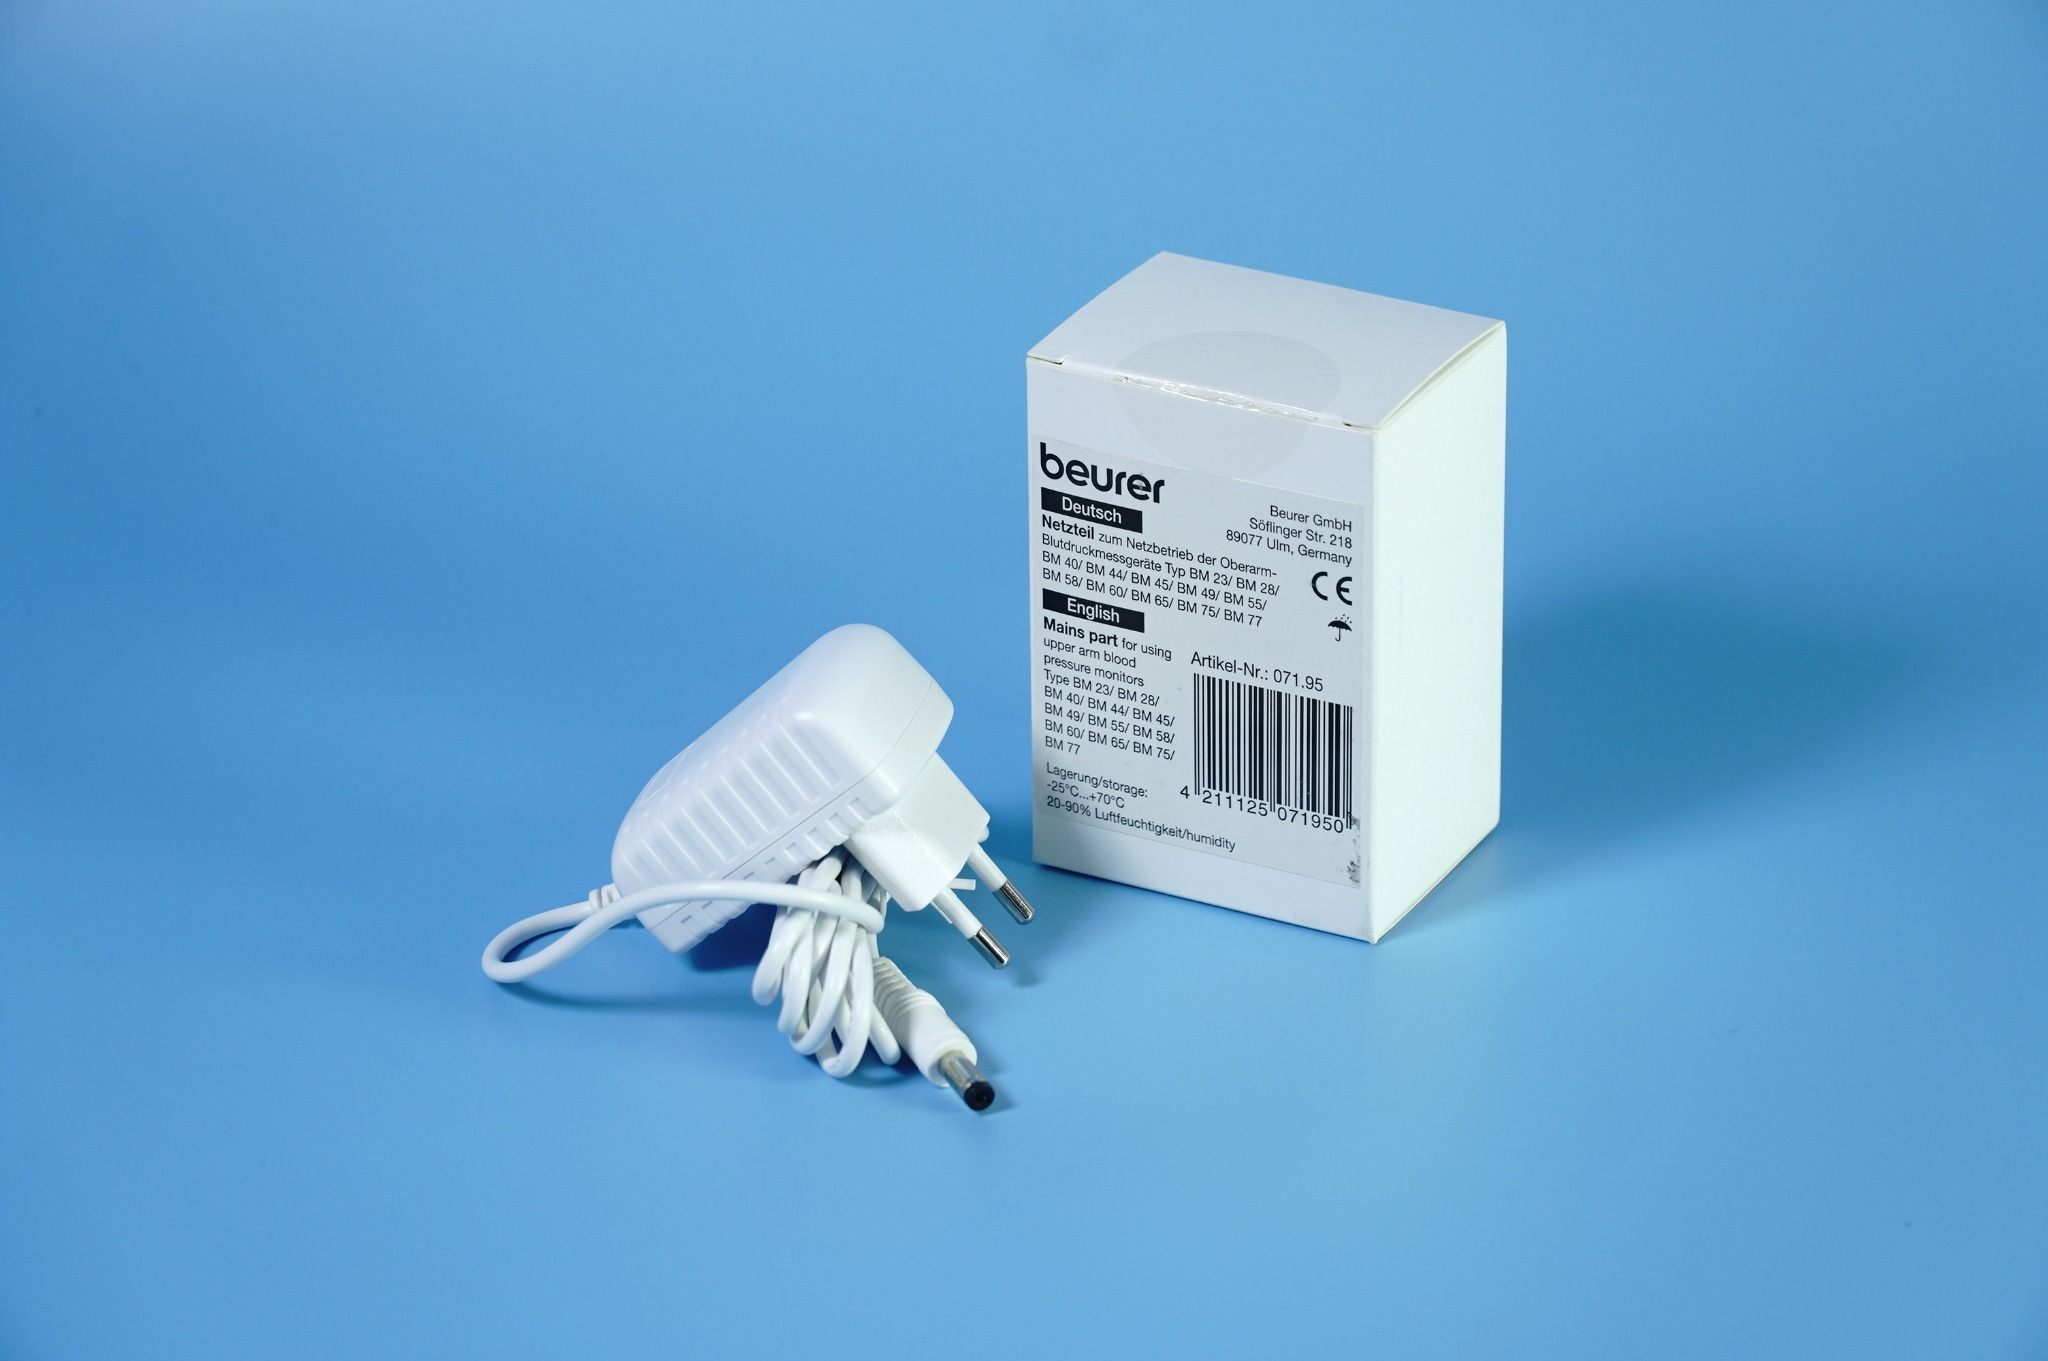  Củ sạc máy đo huyết áp BEURER - Bộ chuyển đổi điện áp máy đo huyết áp Beurer 